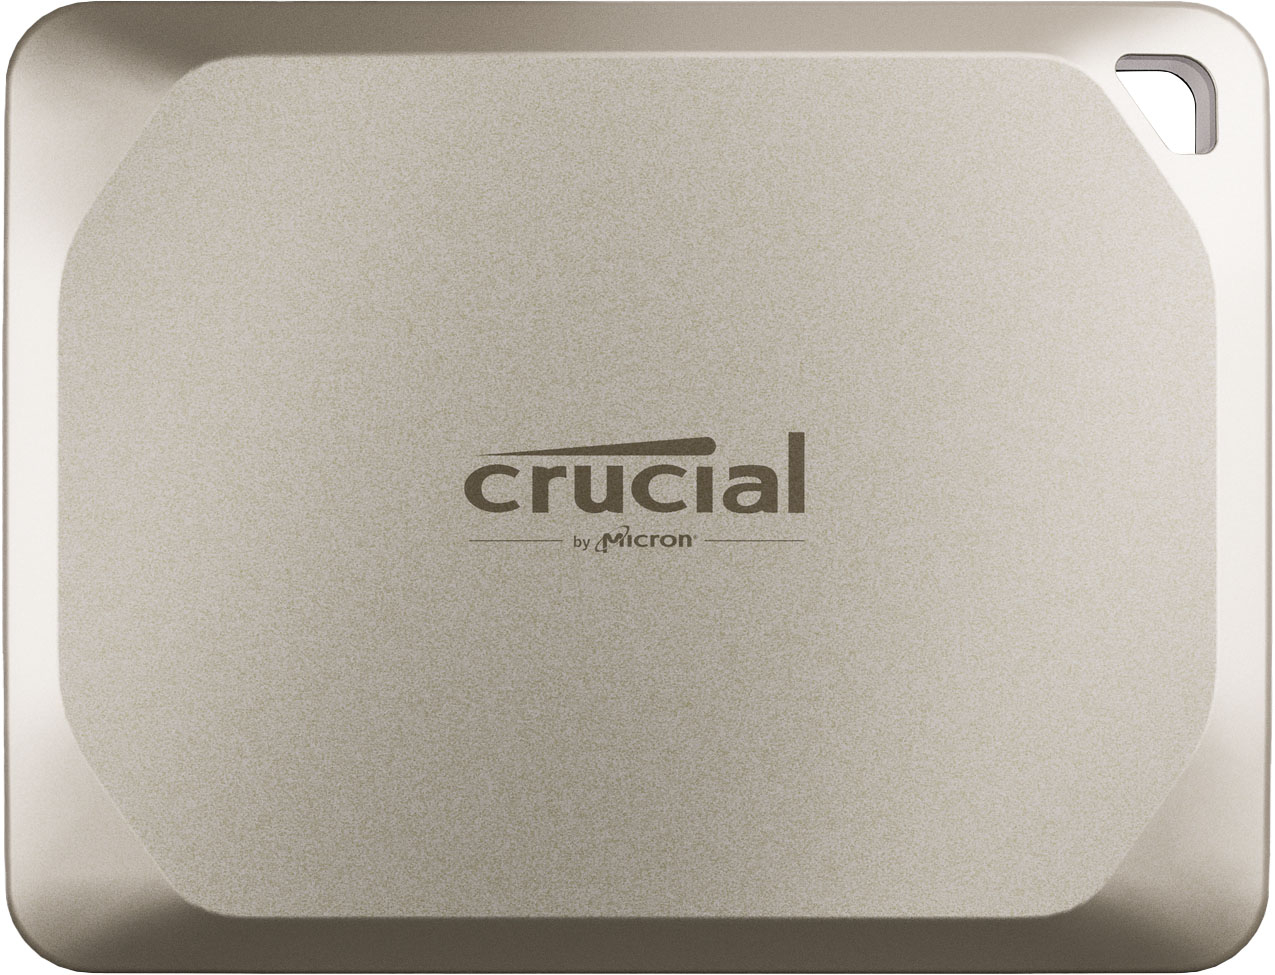 Crucial X9 Pro (1050 Mo/s) et X10 Pro (2100 Mo/s) : deux SSD